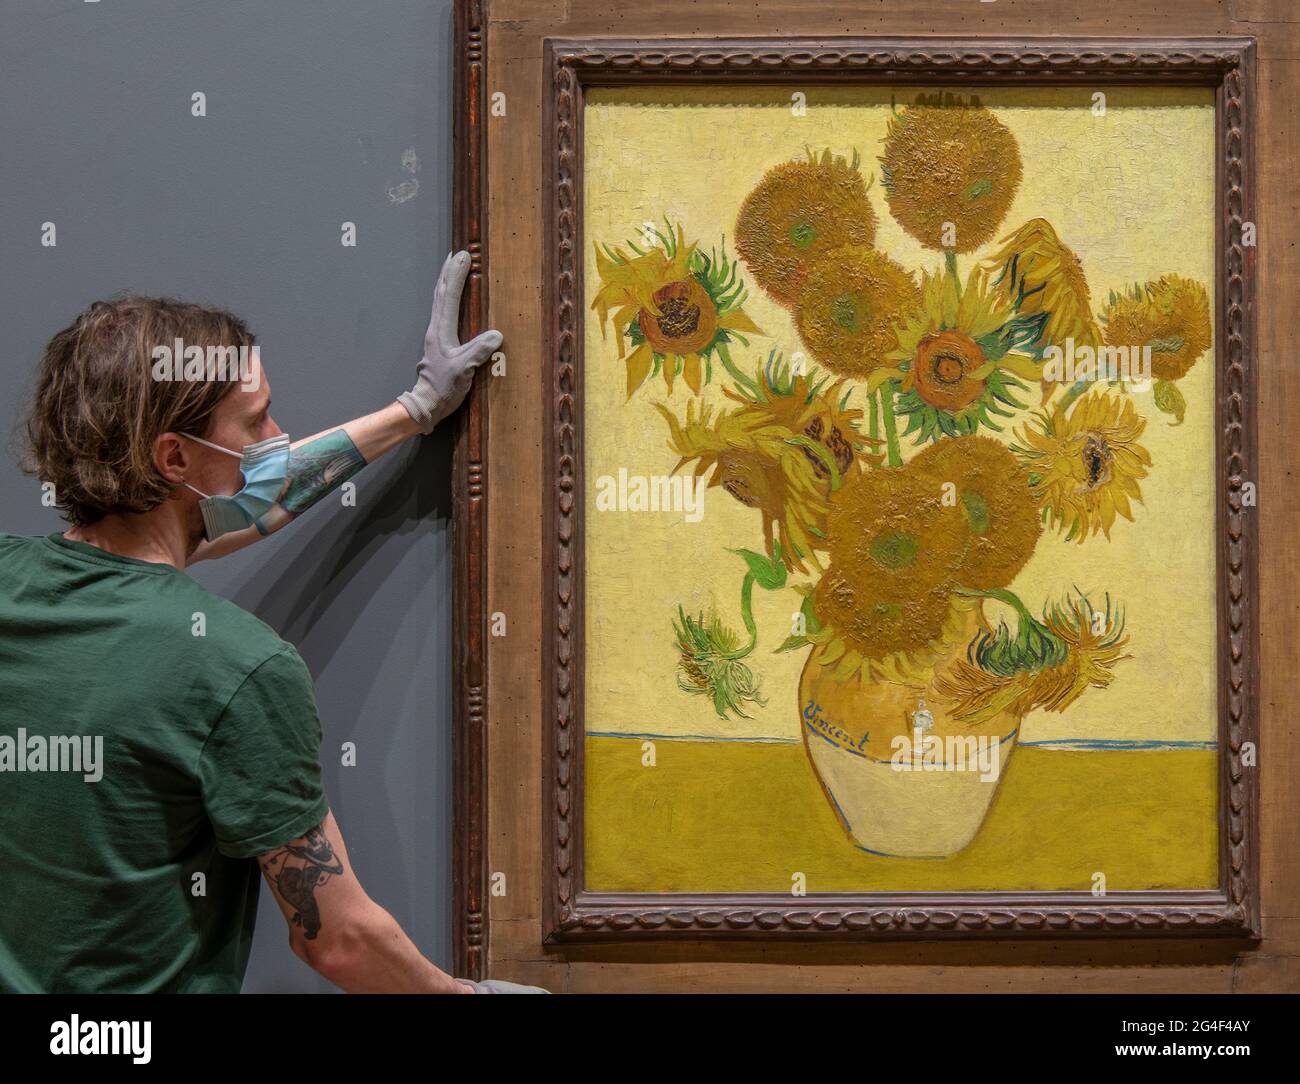 La National Gallery, Londres, Reino Unido. 21 de junio de 2021. Los manipuladores de arte de la Galería Nacional rehang el Vincent van Gogh Sunflowers, pintado 1888, temprano el lunes 21st de junio por la mañana, el solsticio de verano, antes de que la Galería se abra. La obra maestra de Van Gogh ha llegado a casa de la galería después de haber estado en una gira mundial de 16 meses a Japón y Australia. Crédito: Malcolm Park/Alamy Live News. Foto de stock